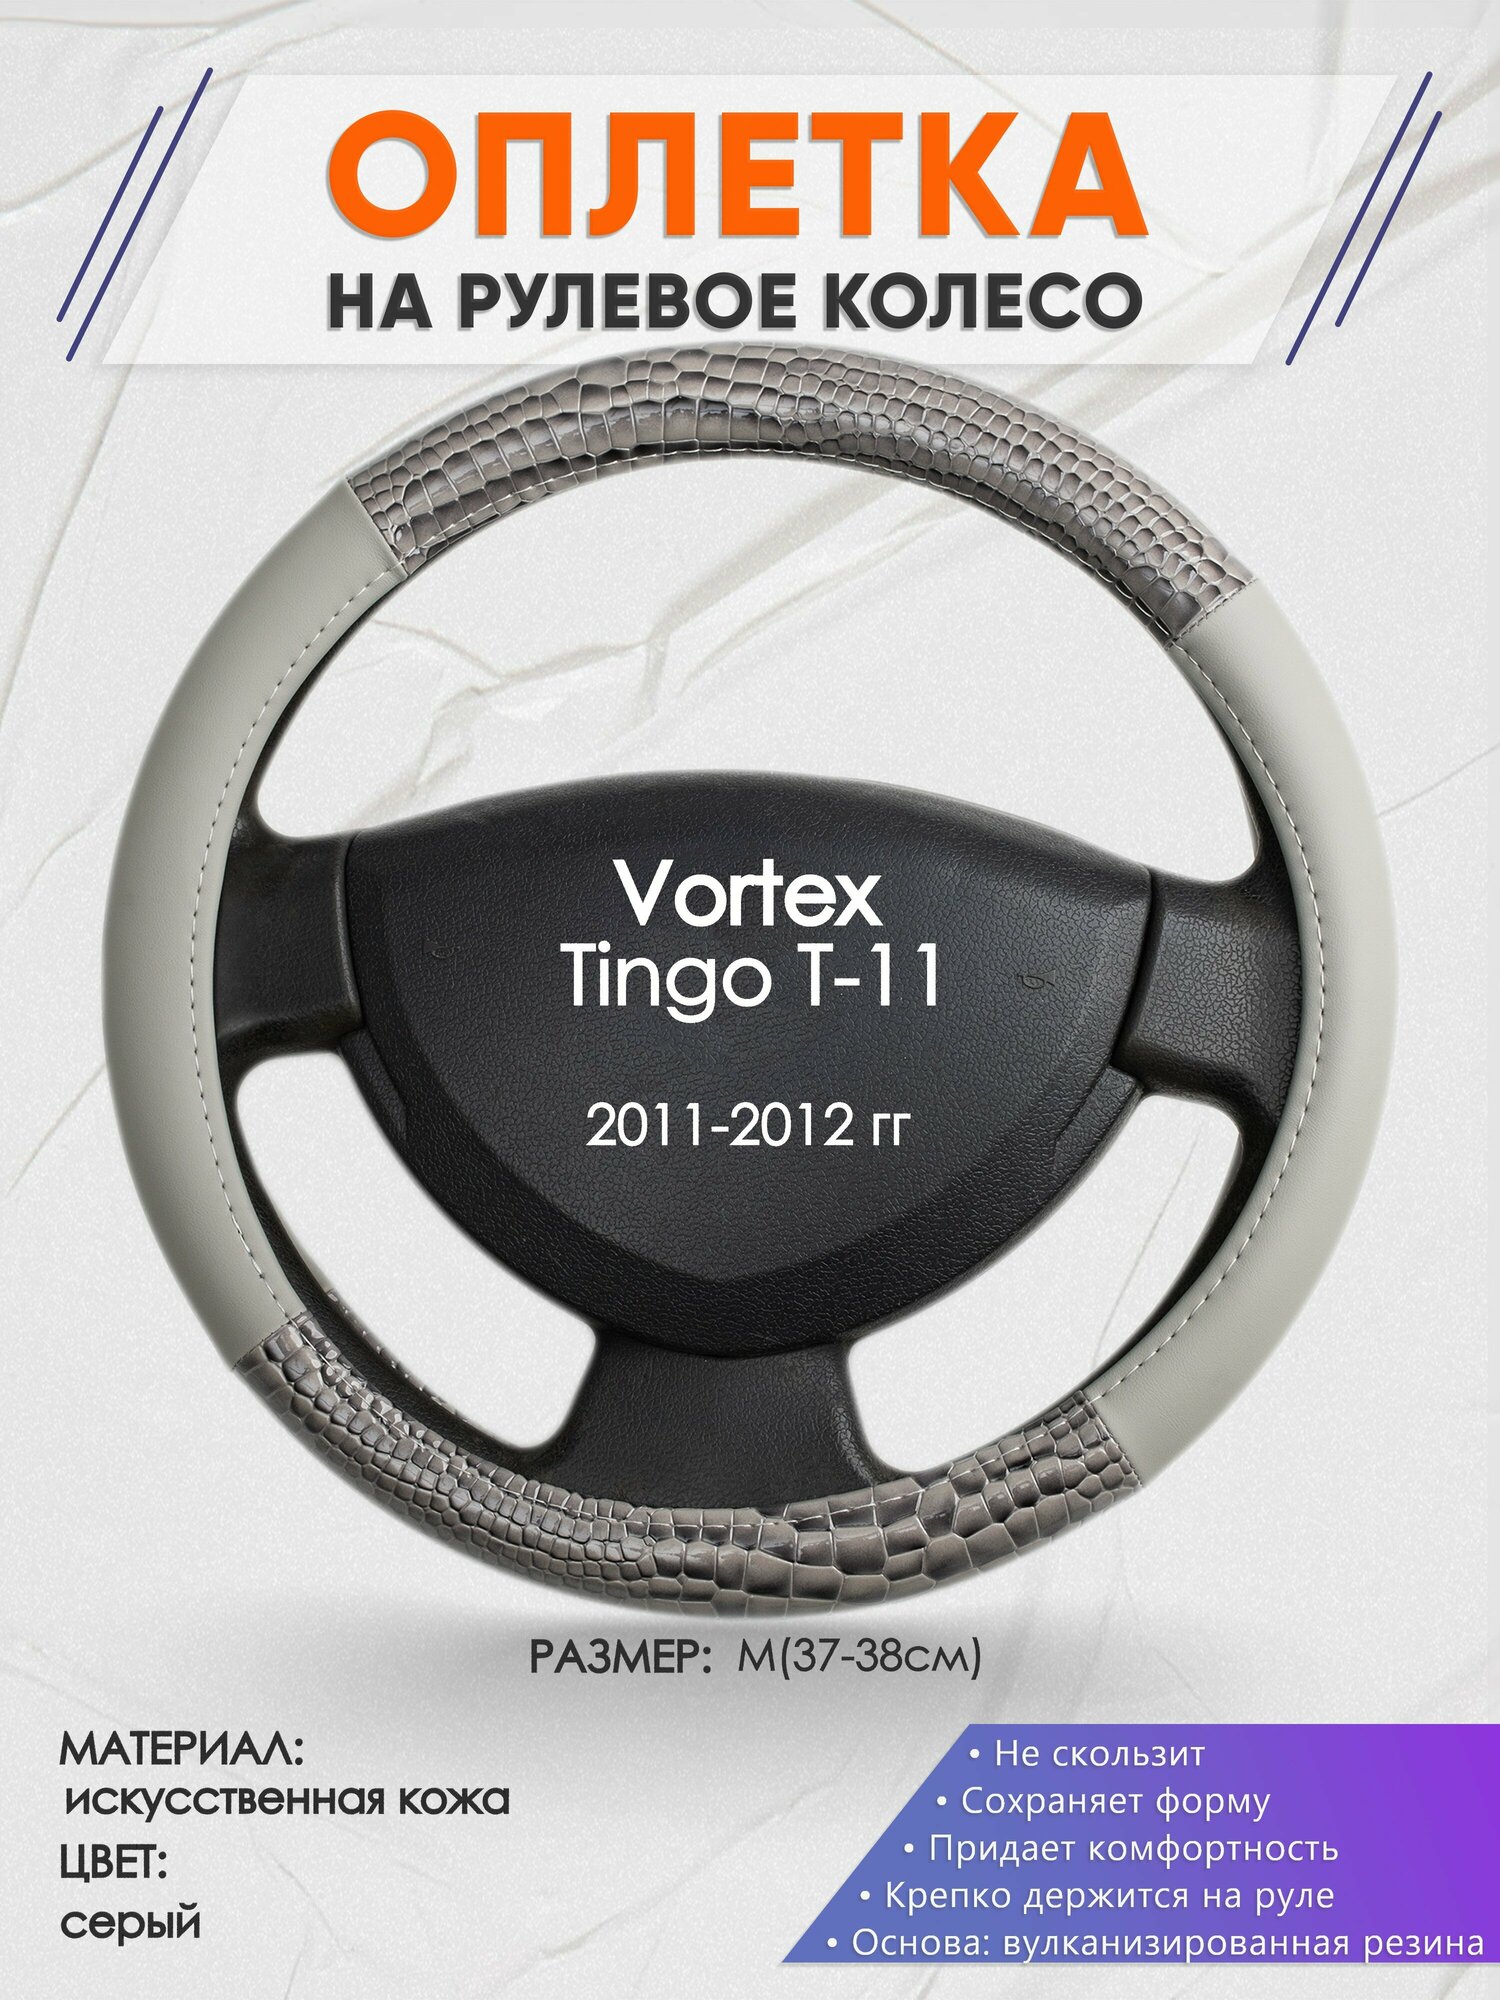 Оплетка на руль для Vortex Tingo T-11(Вортекс Тинго) 2011-2012, M(37-38см), Искусственная кожа 84